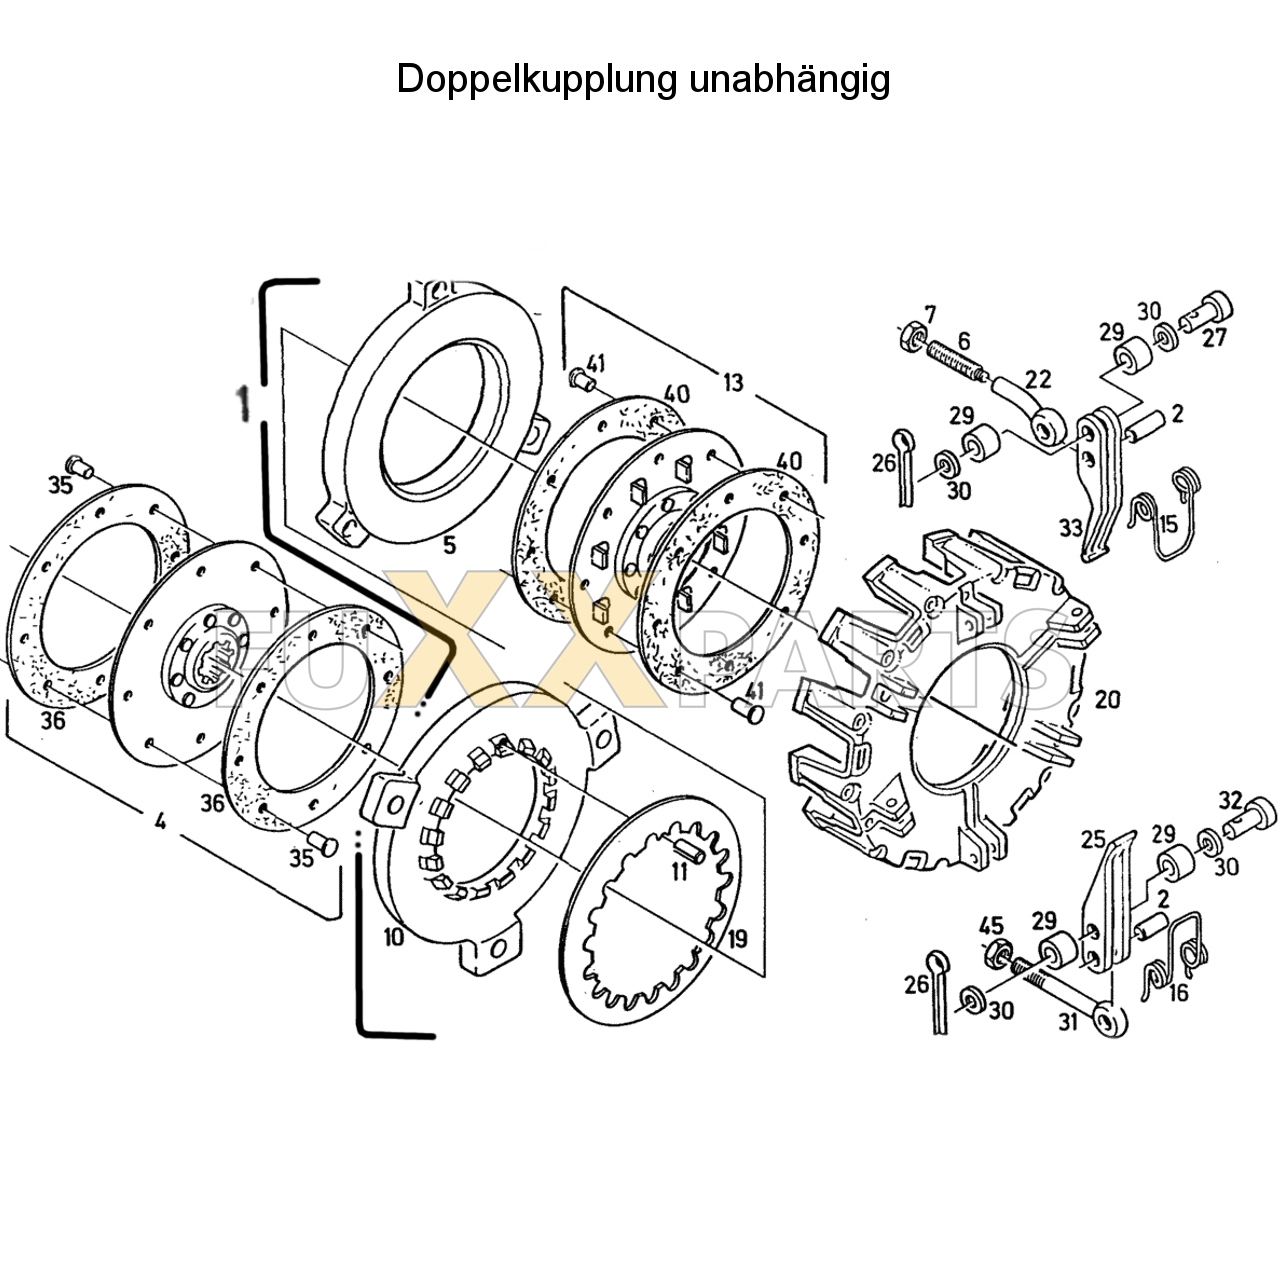 D 6507 Doppelkupplung unabhängig